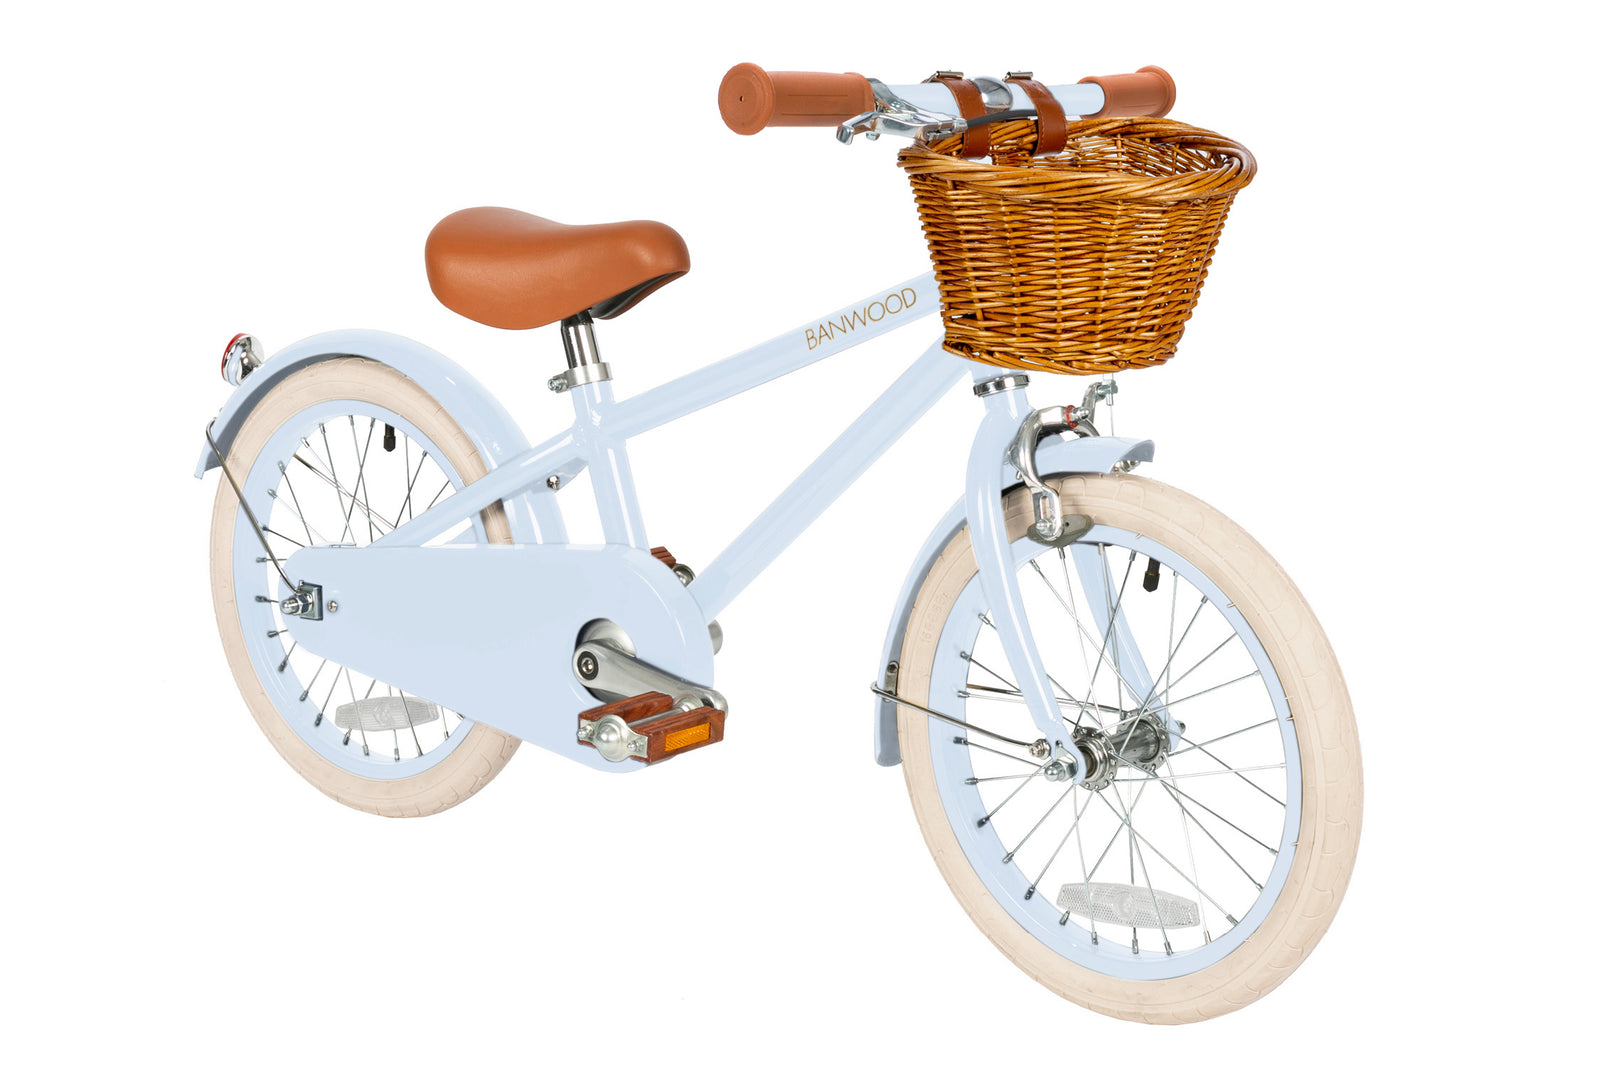 Banwood Classic Bicycle 16" - Sky